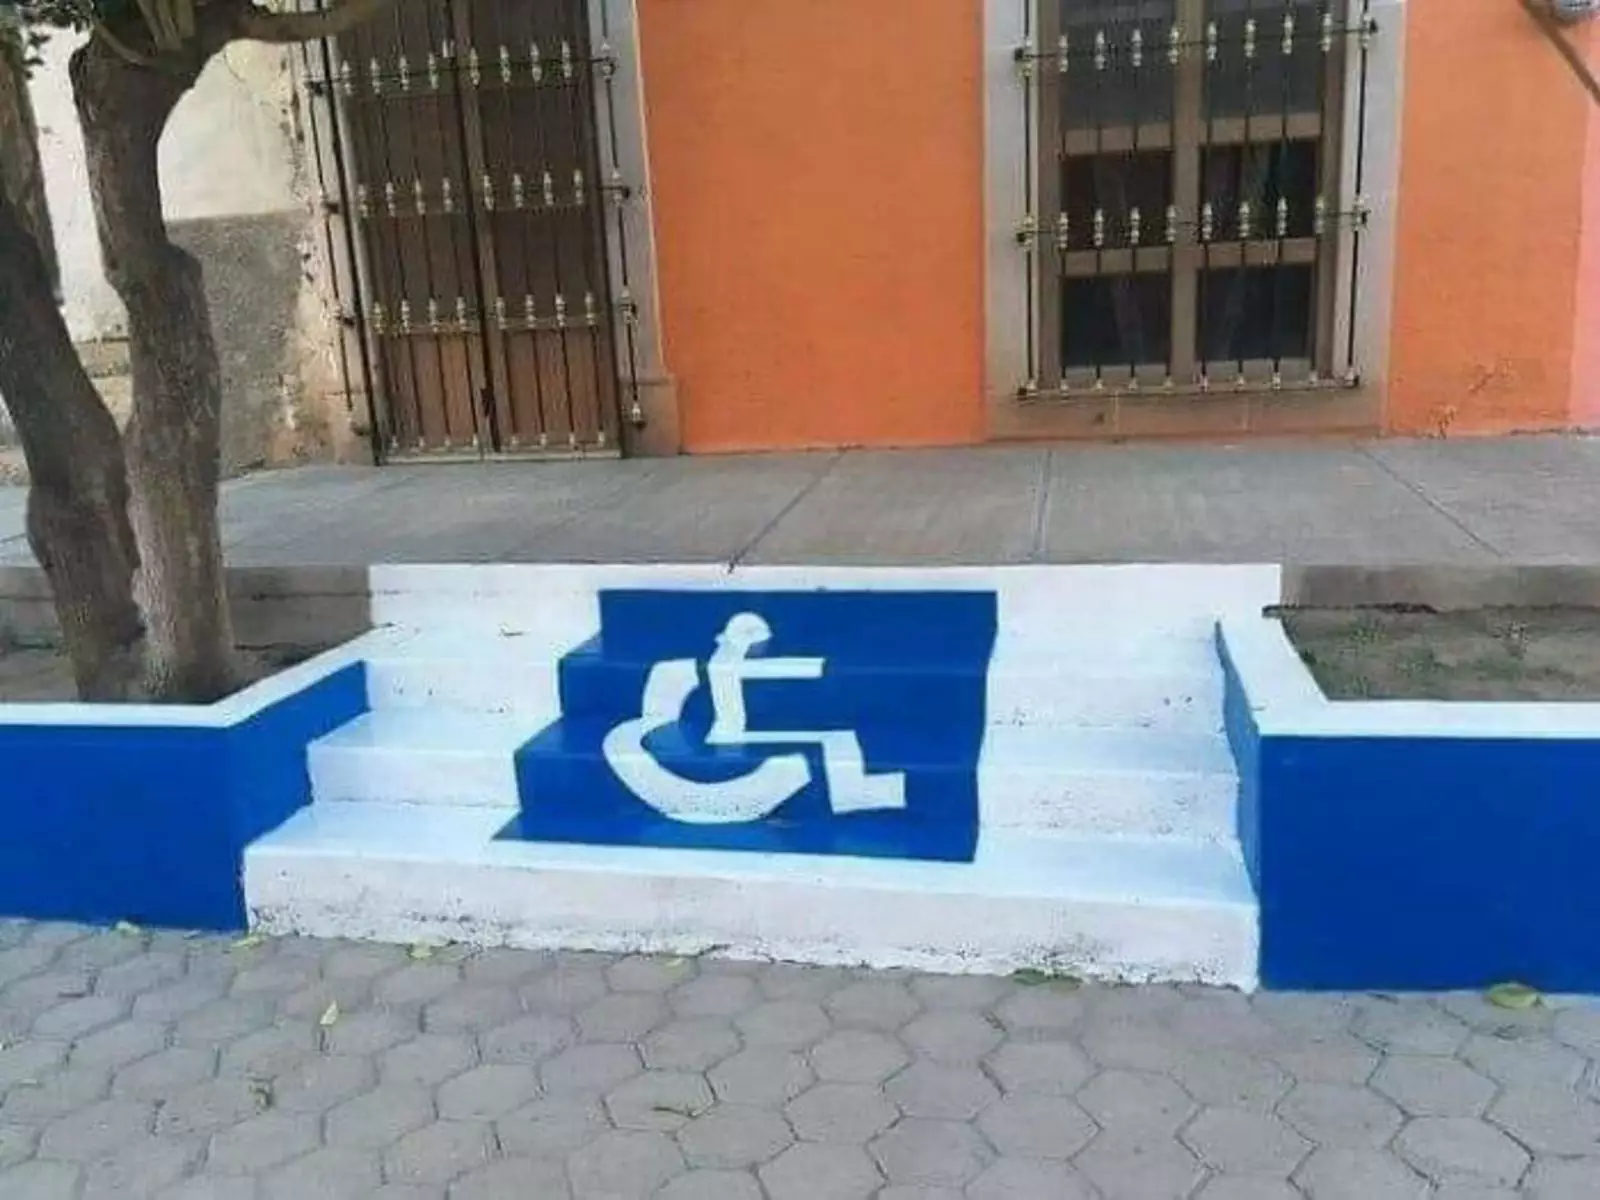 Какой инвалид-колясочник не любит ездить по лестницам?